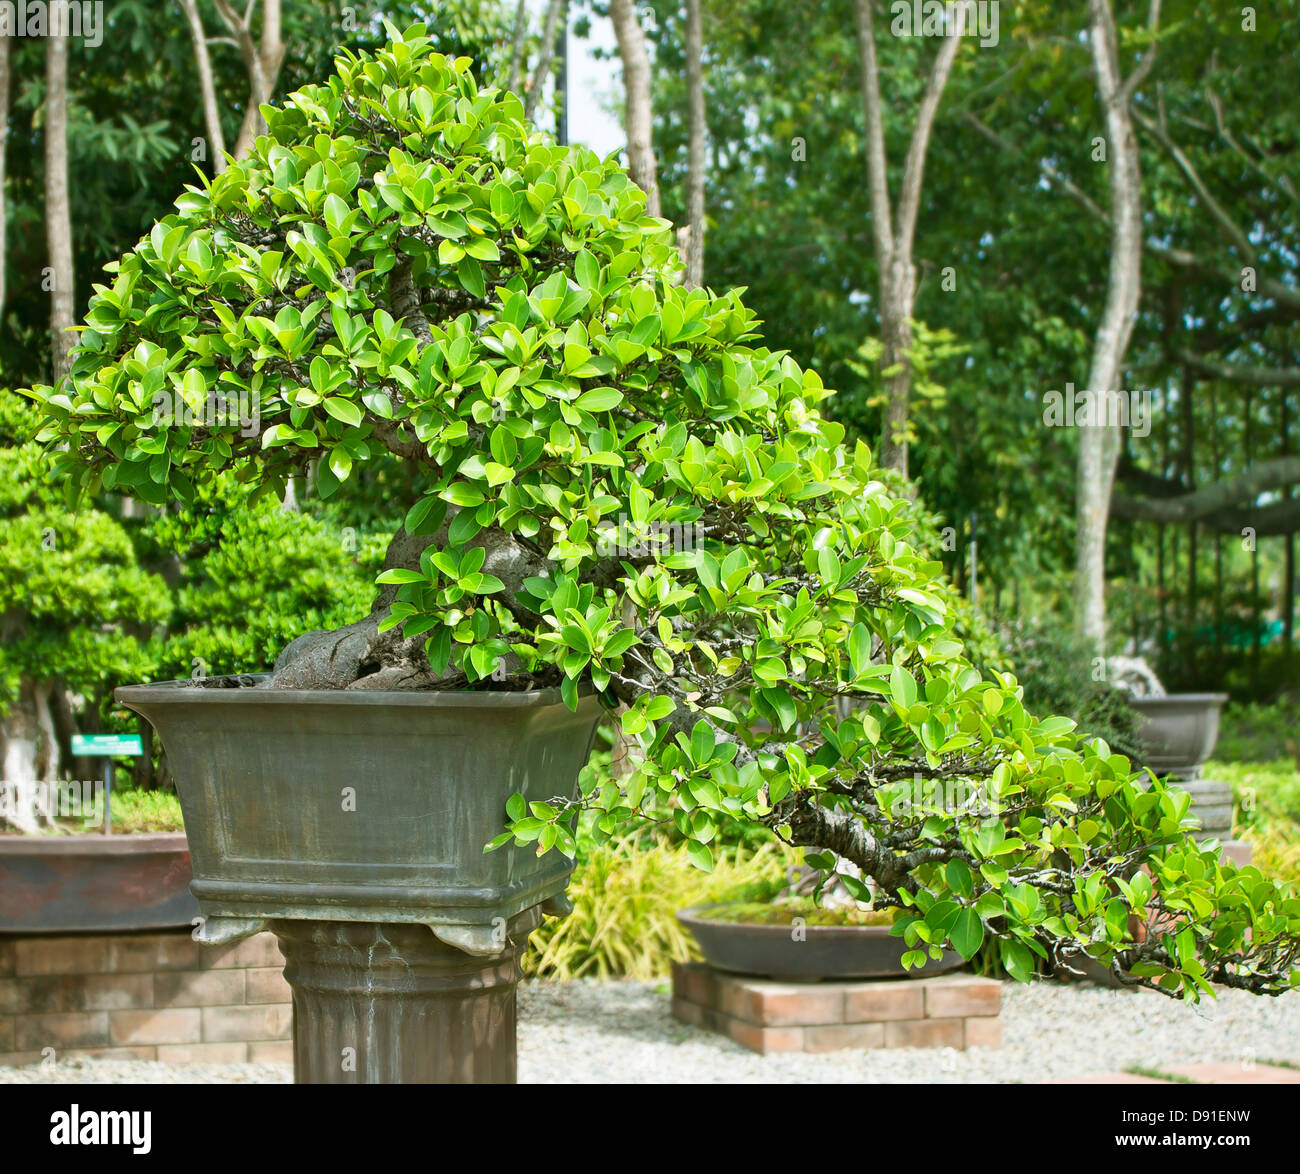 Bonsai trees, small shrubs, greenery in pots. Stock Photo